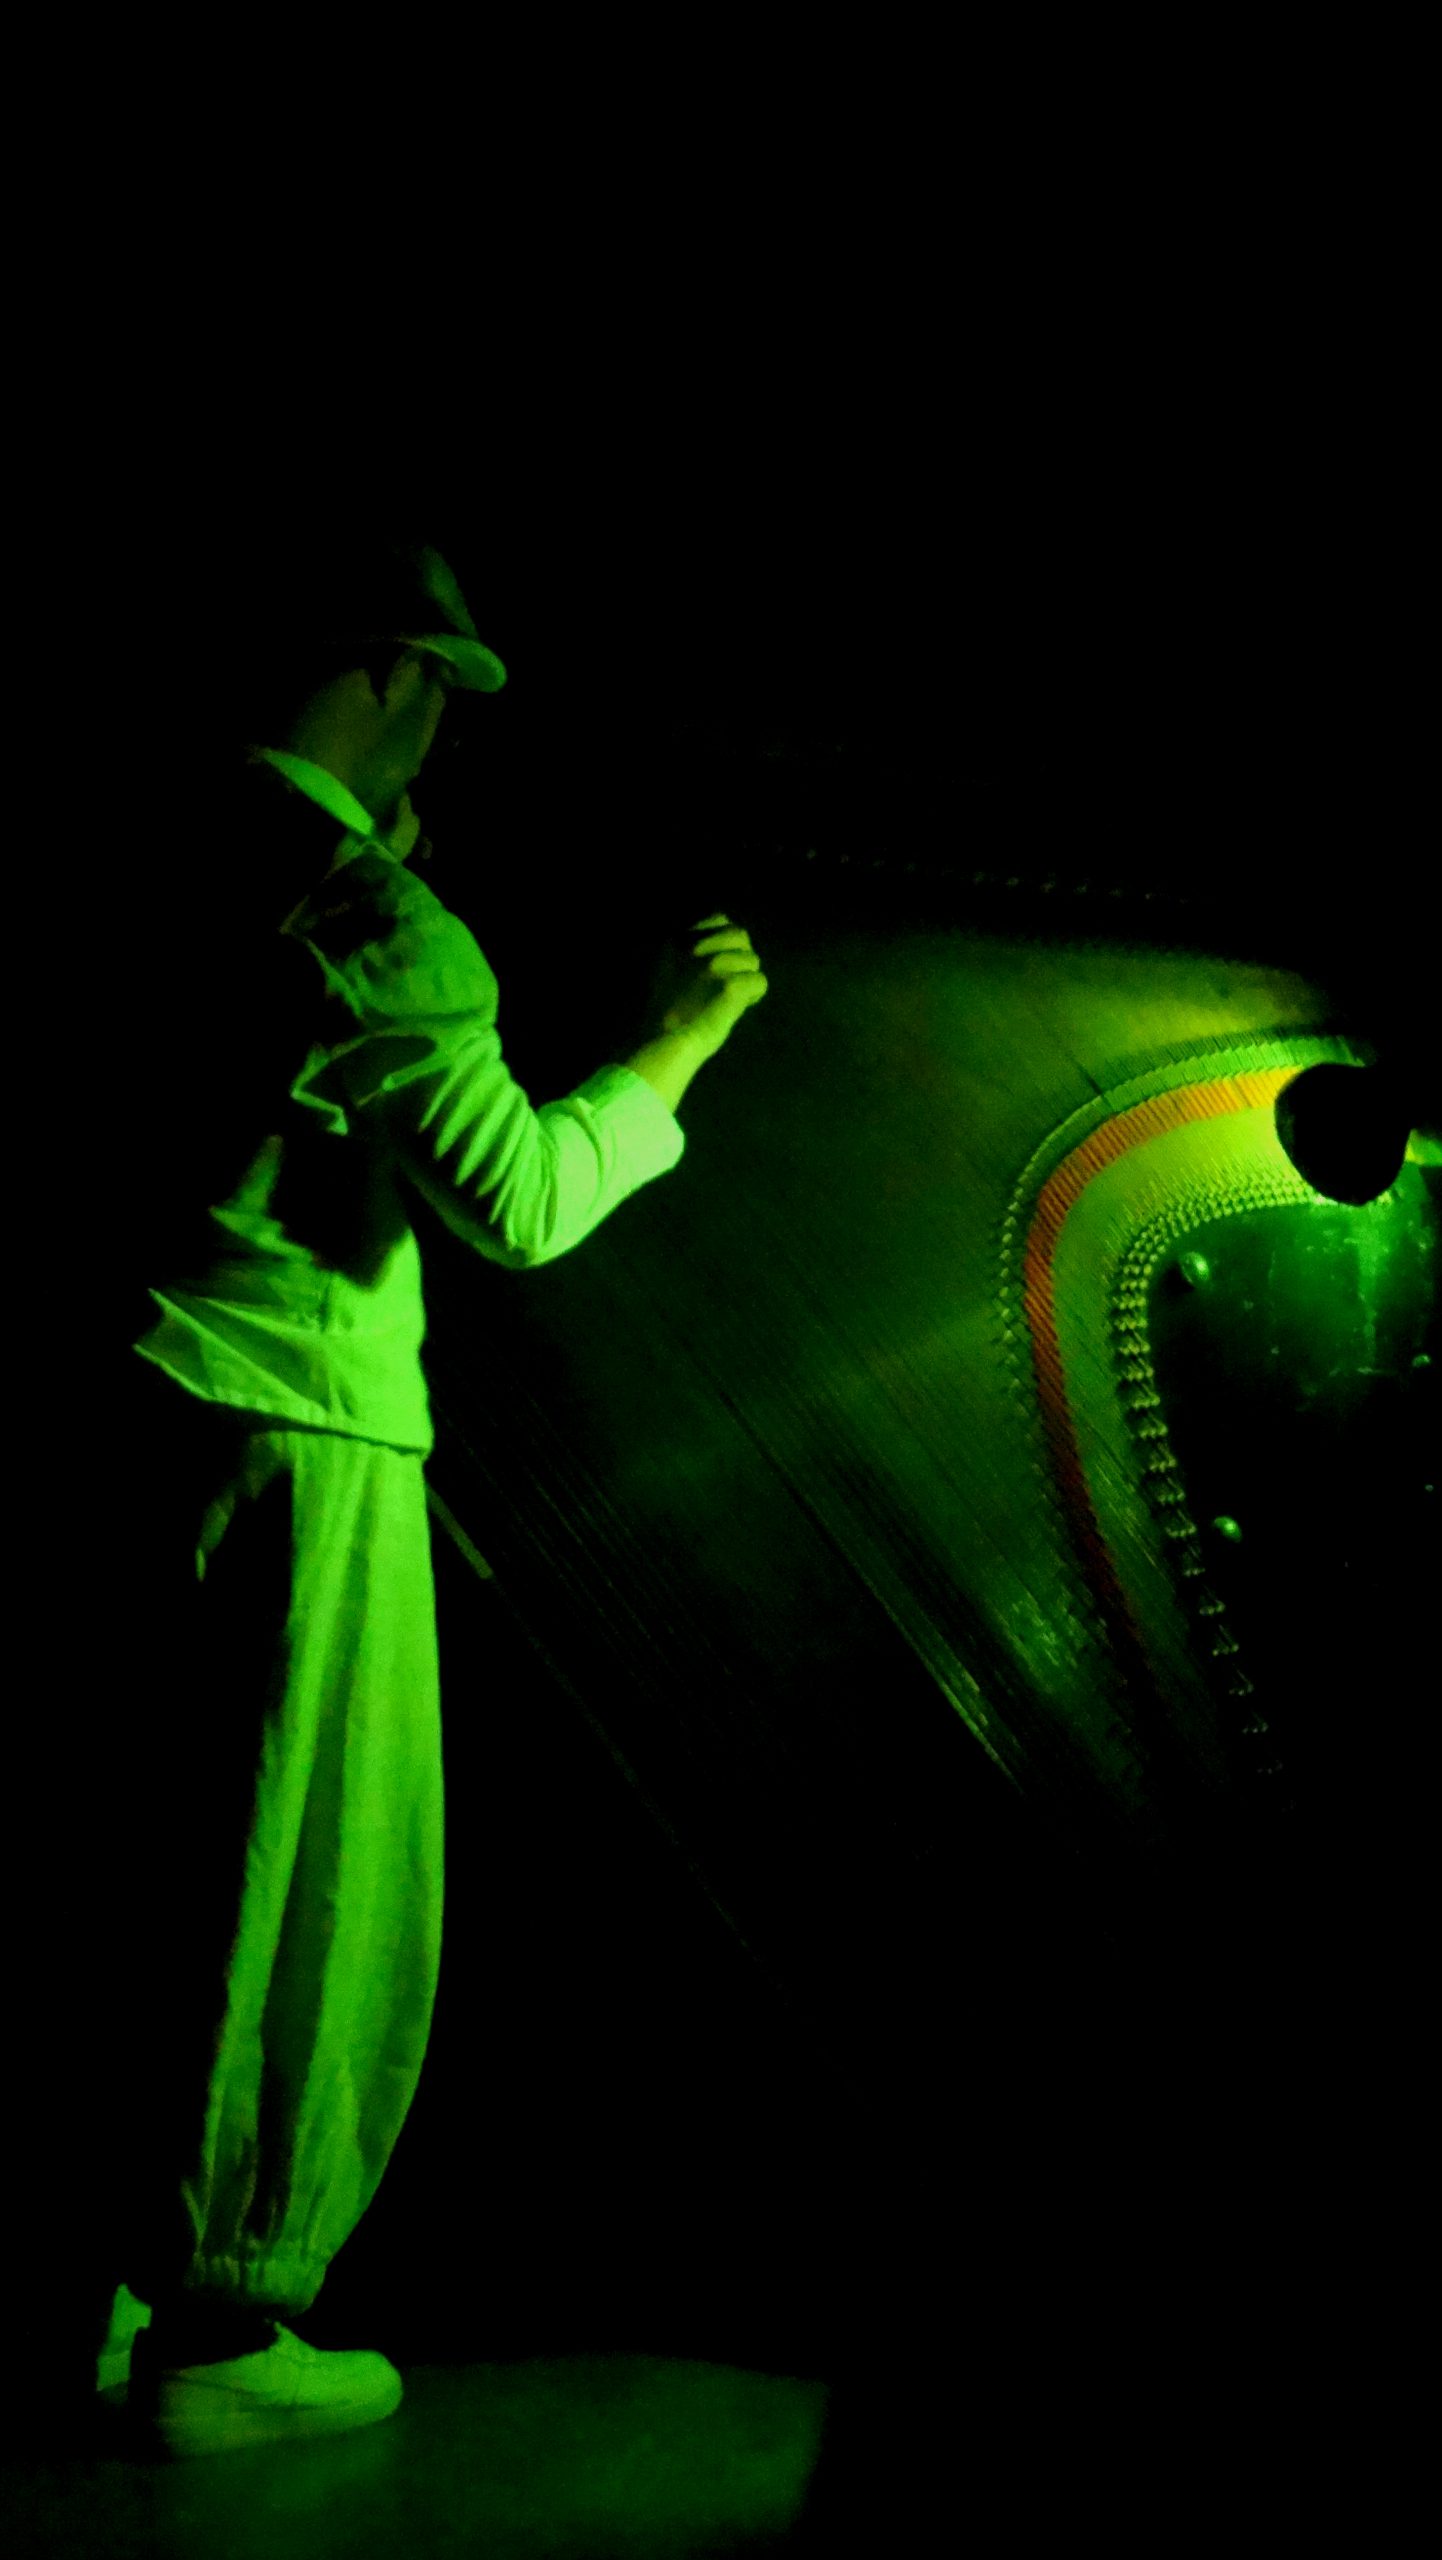 Soirée du 27 novembre, Maxime, jouant des notes de piano debout est mis en lumière par une couleur verte.